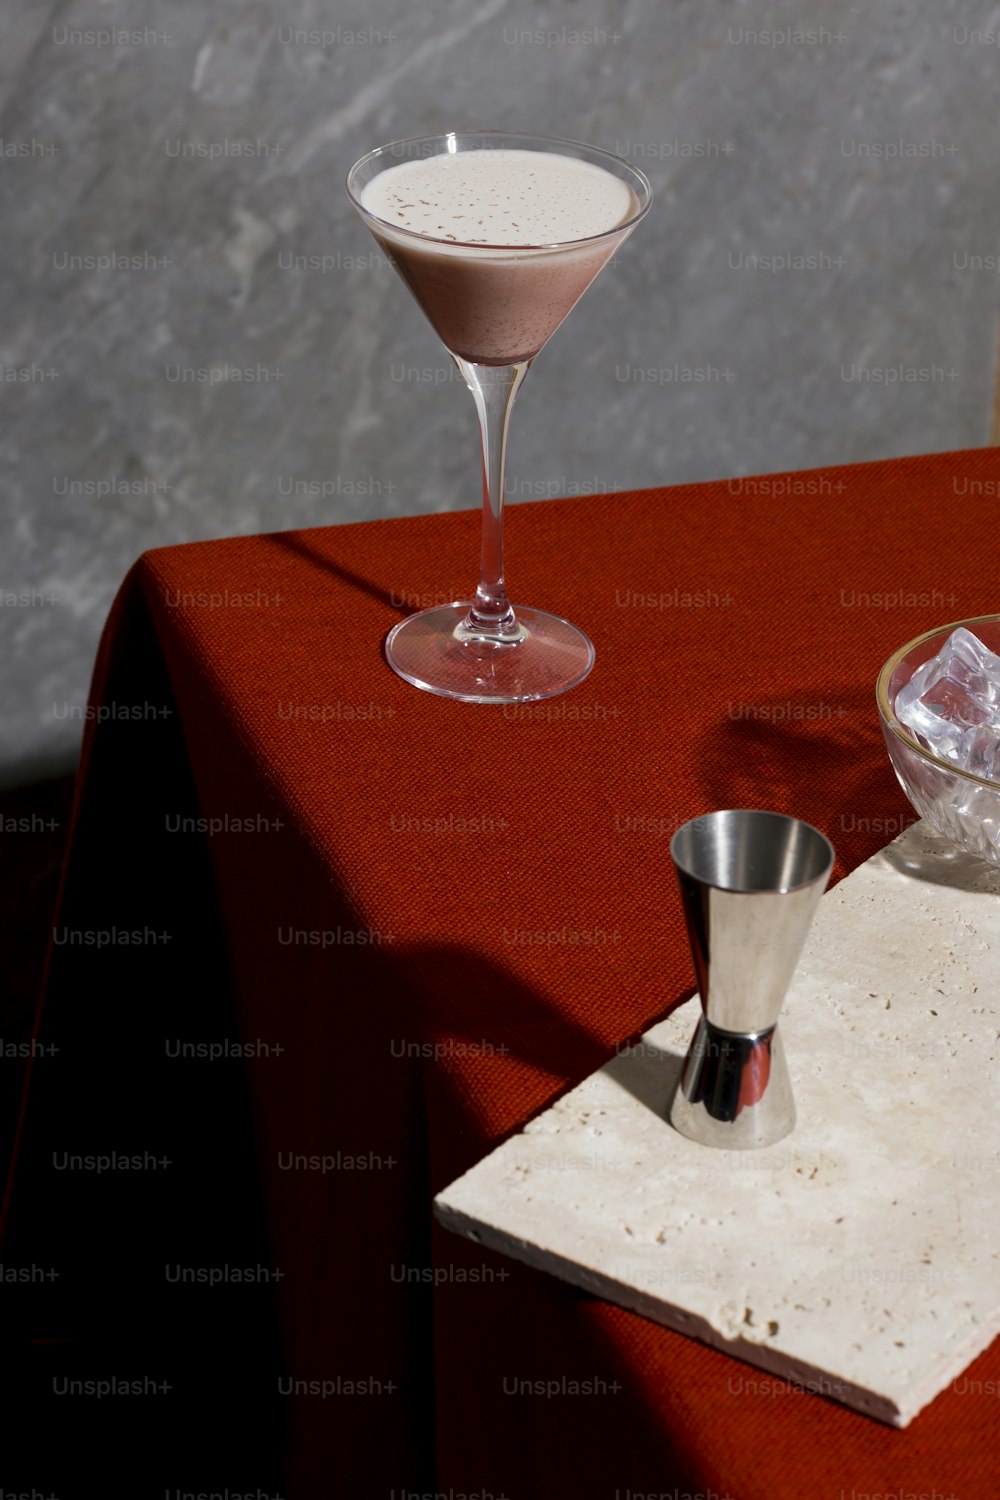 Alexander, un cocktail d’après-dîner avec du gin ou du cognac, de la crème de cacao blanche, de la crème fraîche et de la noix de muscade râpée